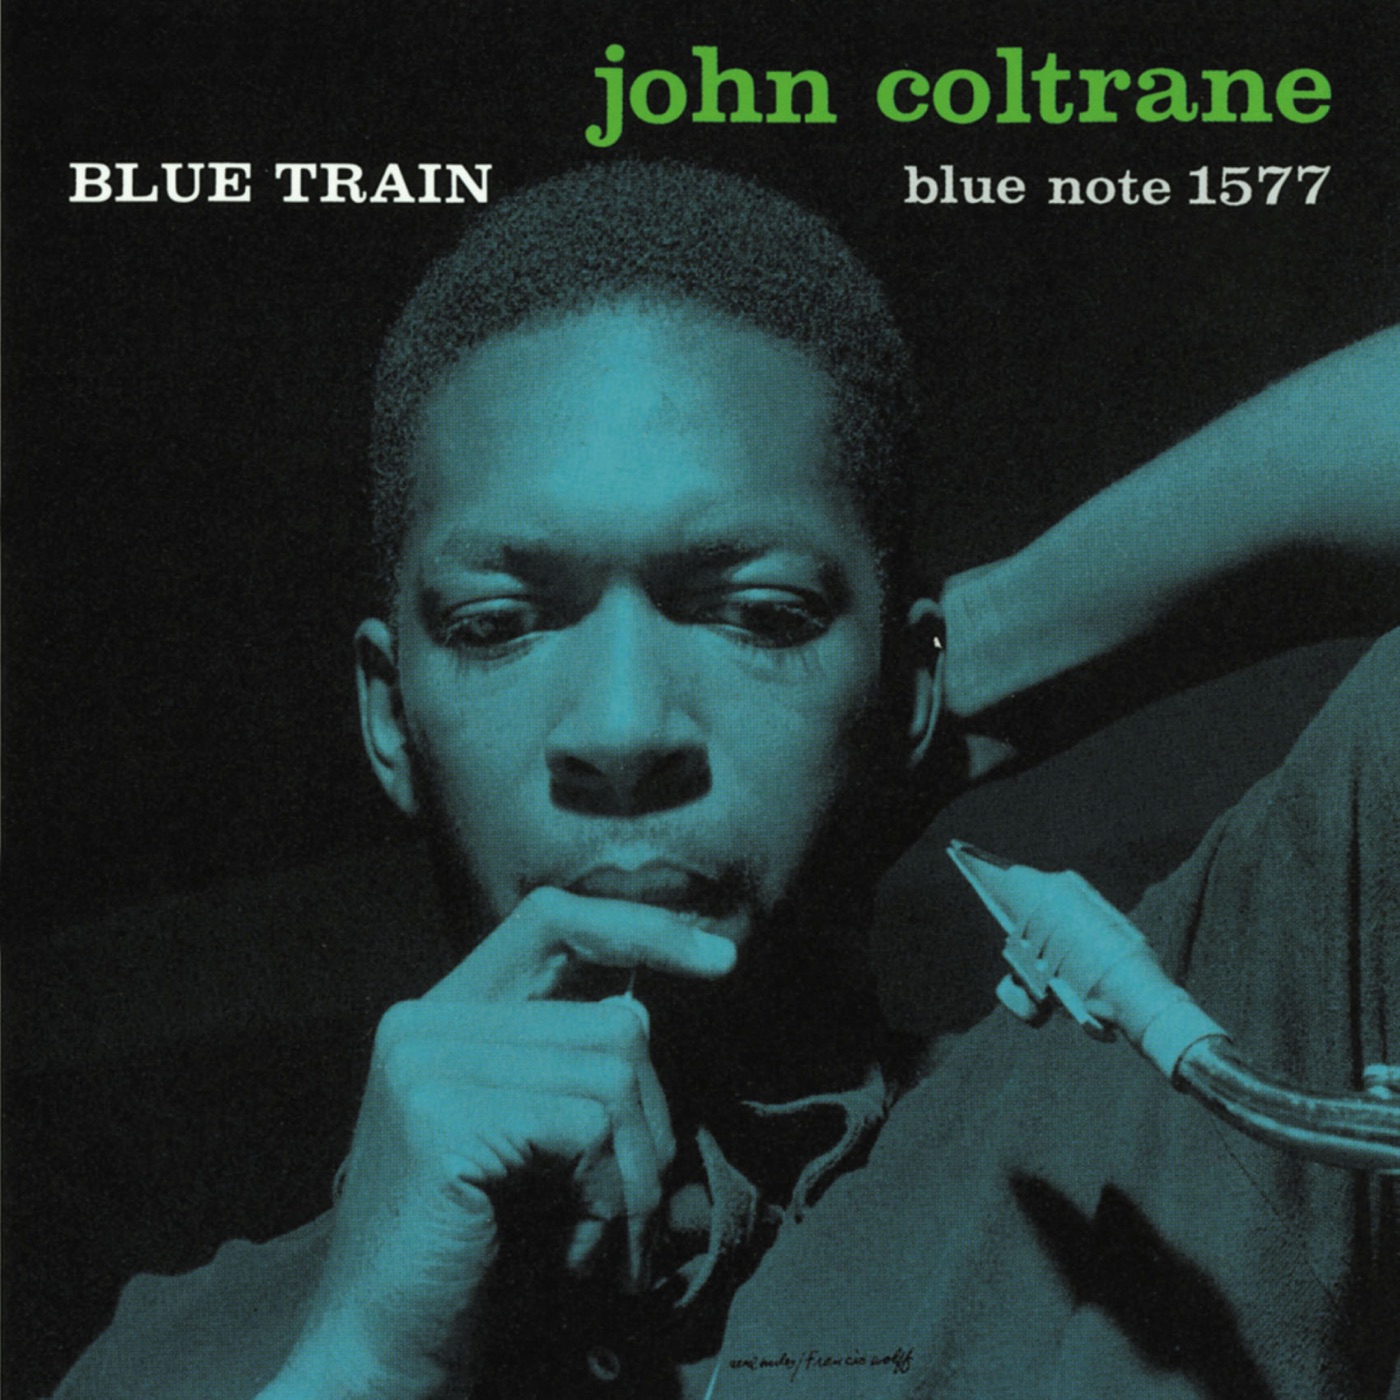 Blue Train by John Coltrane